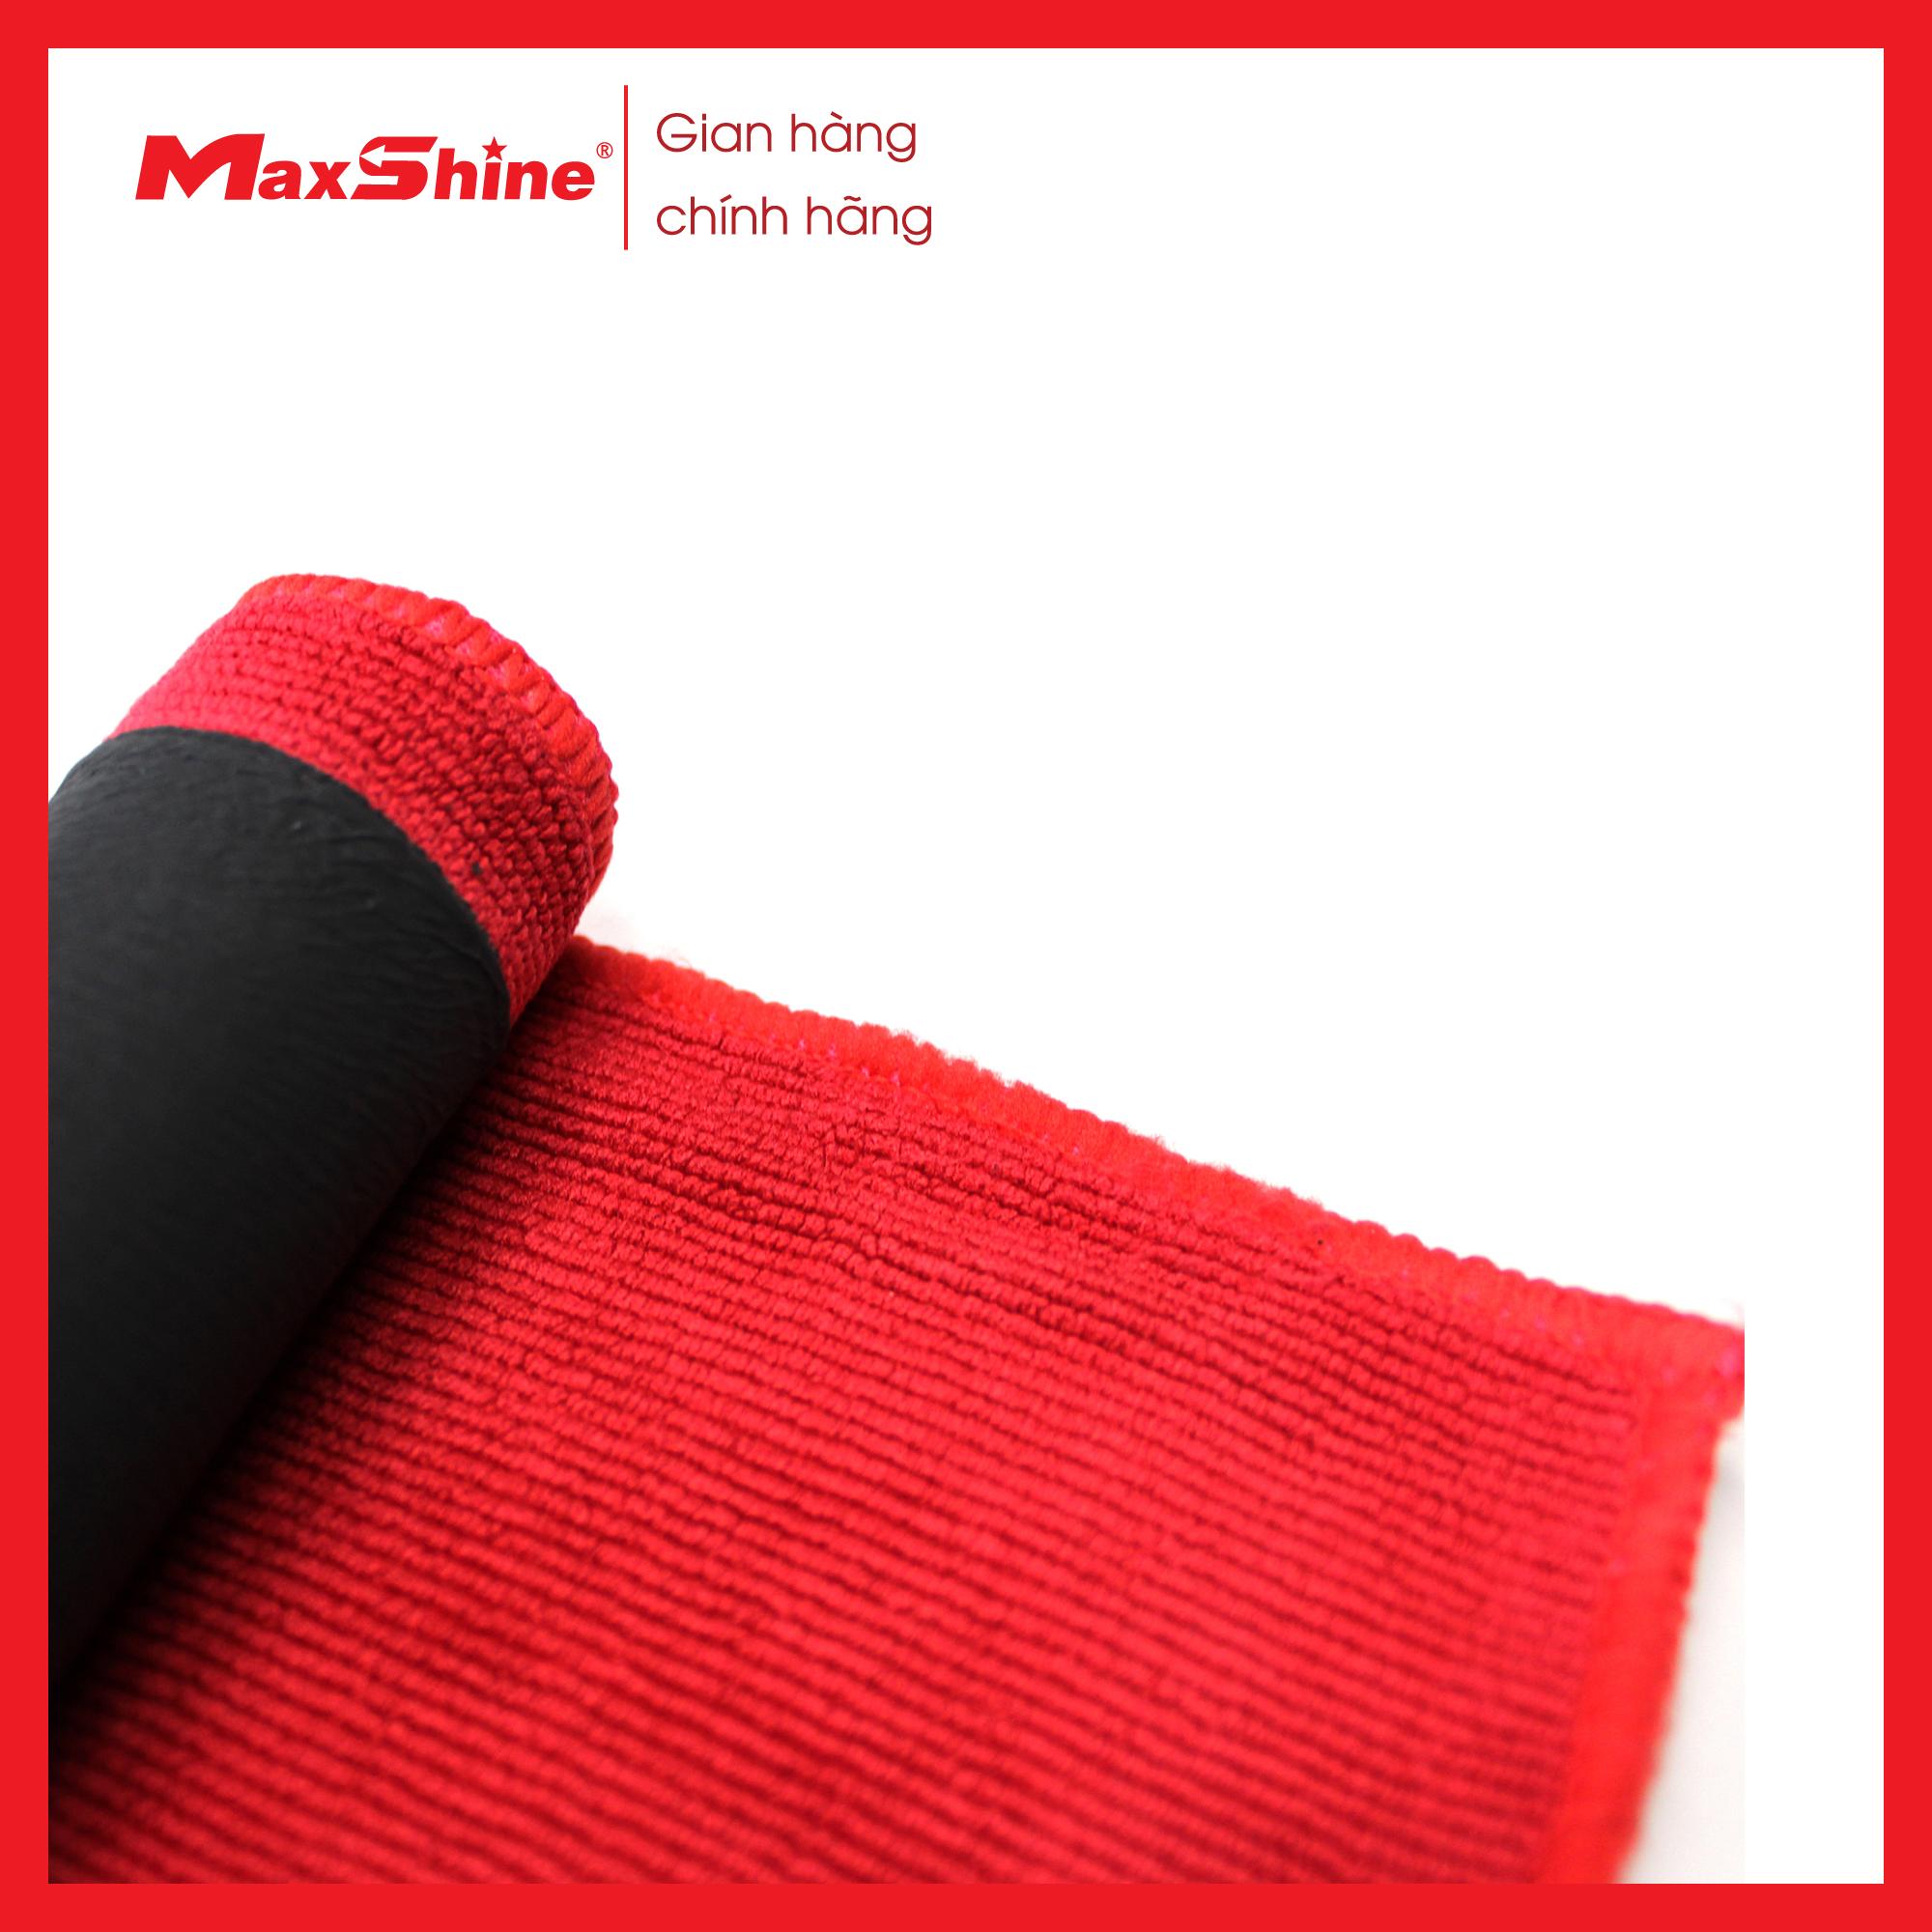 Khăn đất sét – Clay Towel – Fine Grade Maxshine 2043030R kết hợp độc đáo giữa mặt khăn sợi nhỏ màu đỏ với 1 mặt khăn đất sét